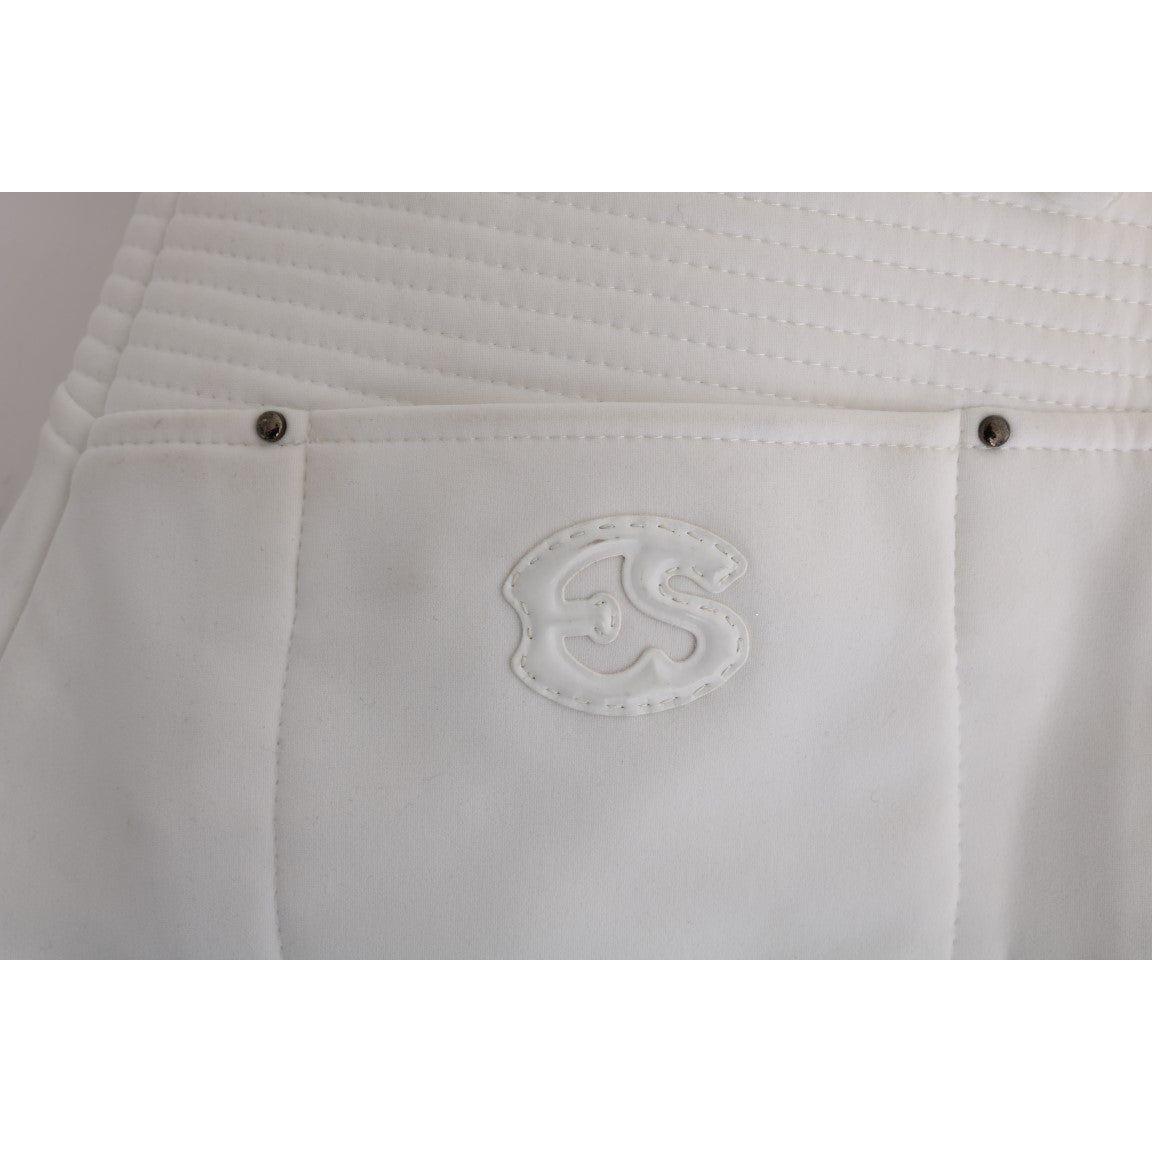 Ermanno Scervino Chic White Slim Fit Cotton Pants white-cotton-slim-fit-casual-pants-1